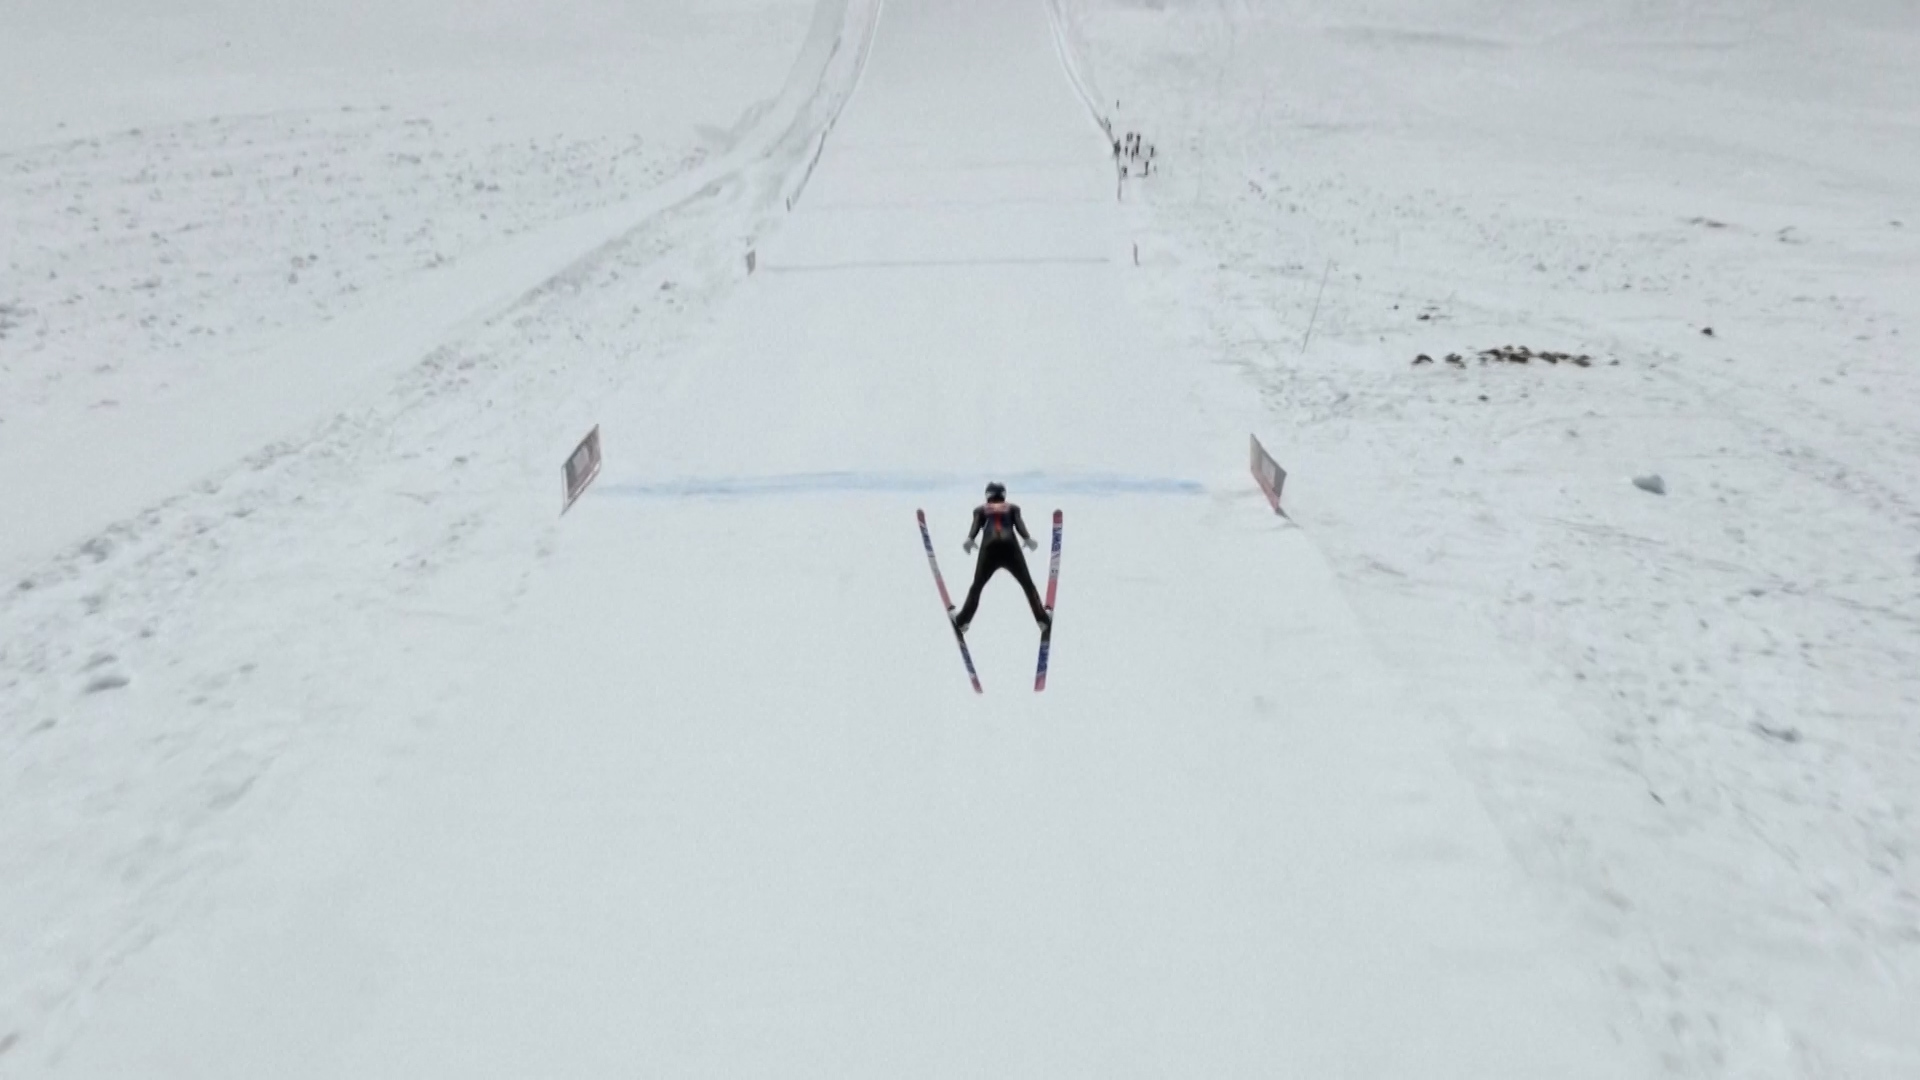 Ryoyu Kobayashi, médaillé olympique de saut à ski, a battu le record du monde de saut à ski mercredi 24 avril, en planant sur 291 mètres.